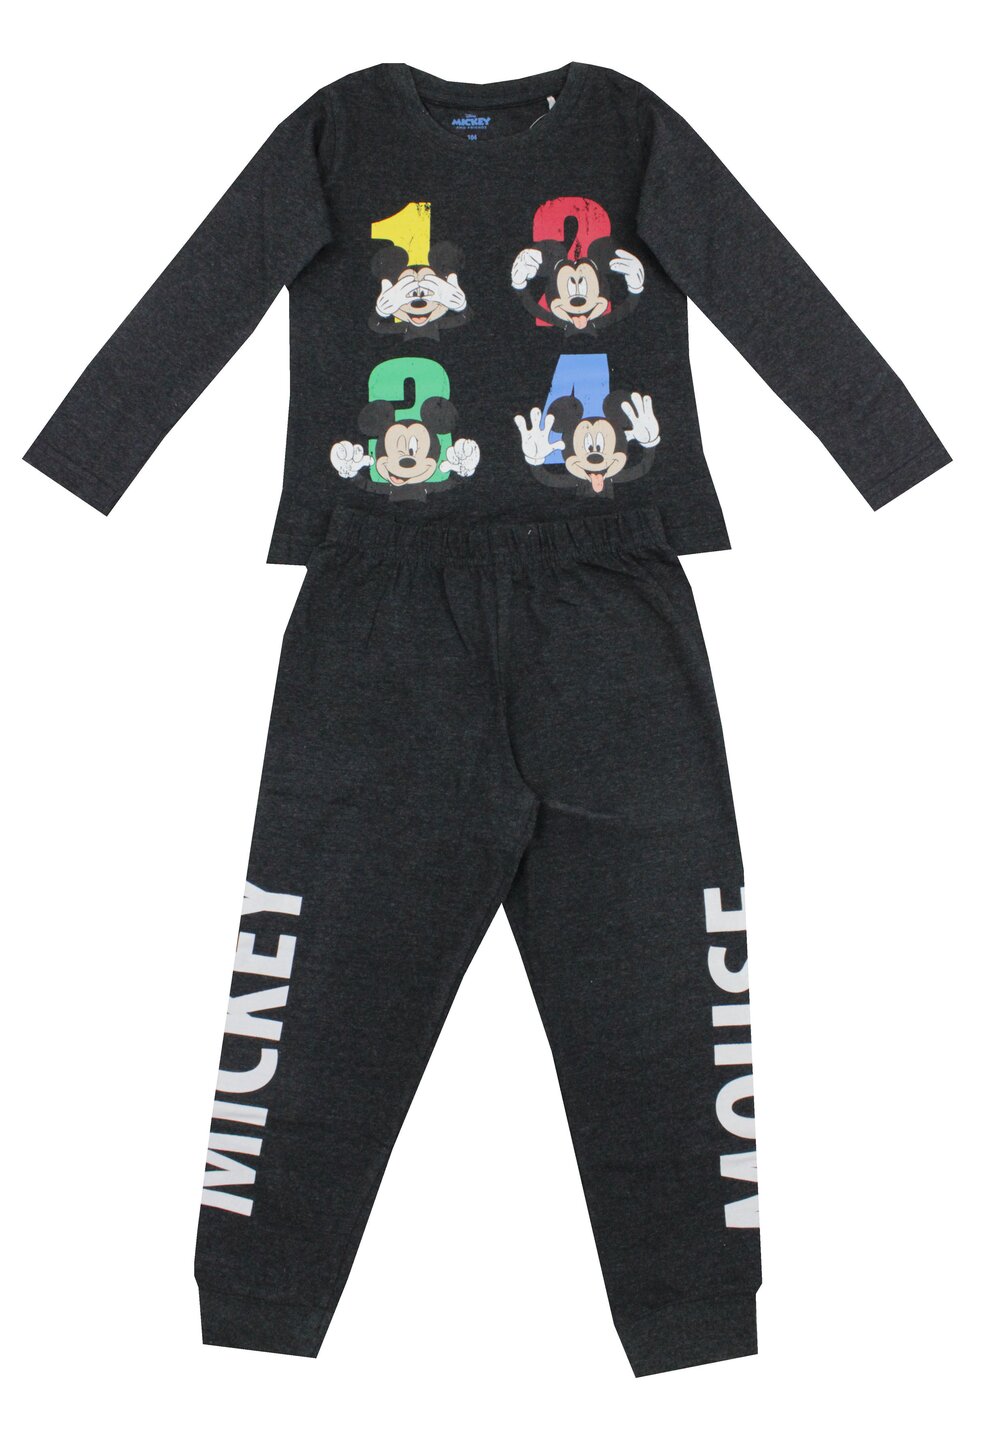 Pijama ML, bumbac, 1 2 3 4, Mickey Mouse, gri inchis DISNEY